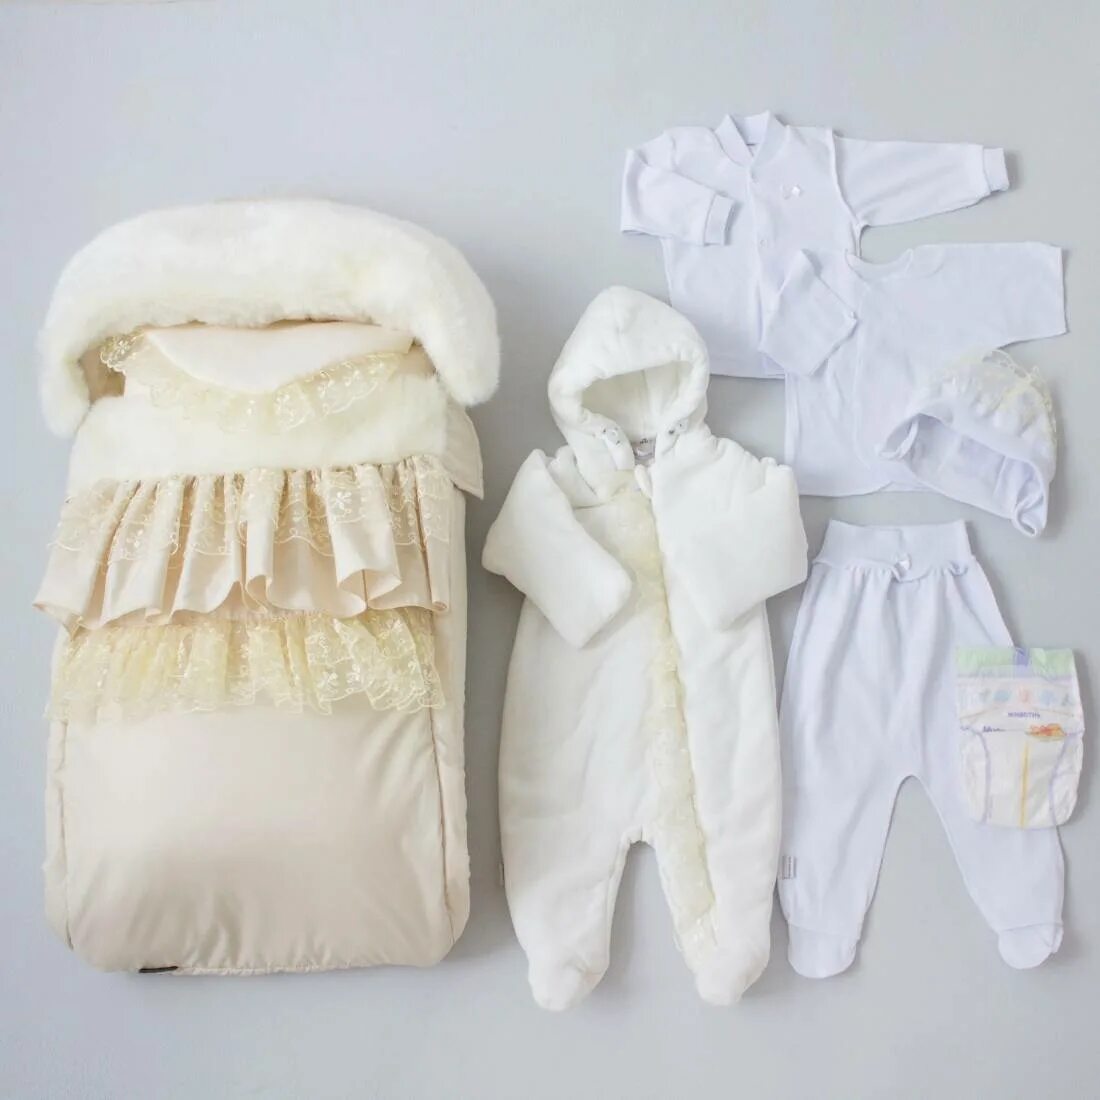 Что нужно на выписку из роддома. Одежда на выписку для новорожденных зима. Комплект для новорожденного на выписку. Одежда для новорожденных на выписку зимой. Комплект на выписку для новорожденных.